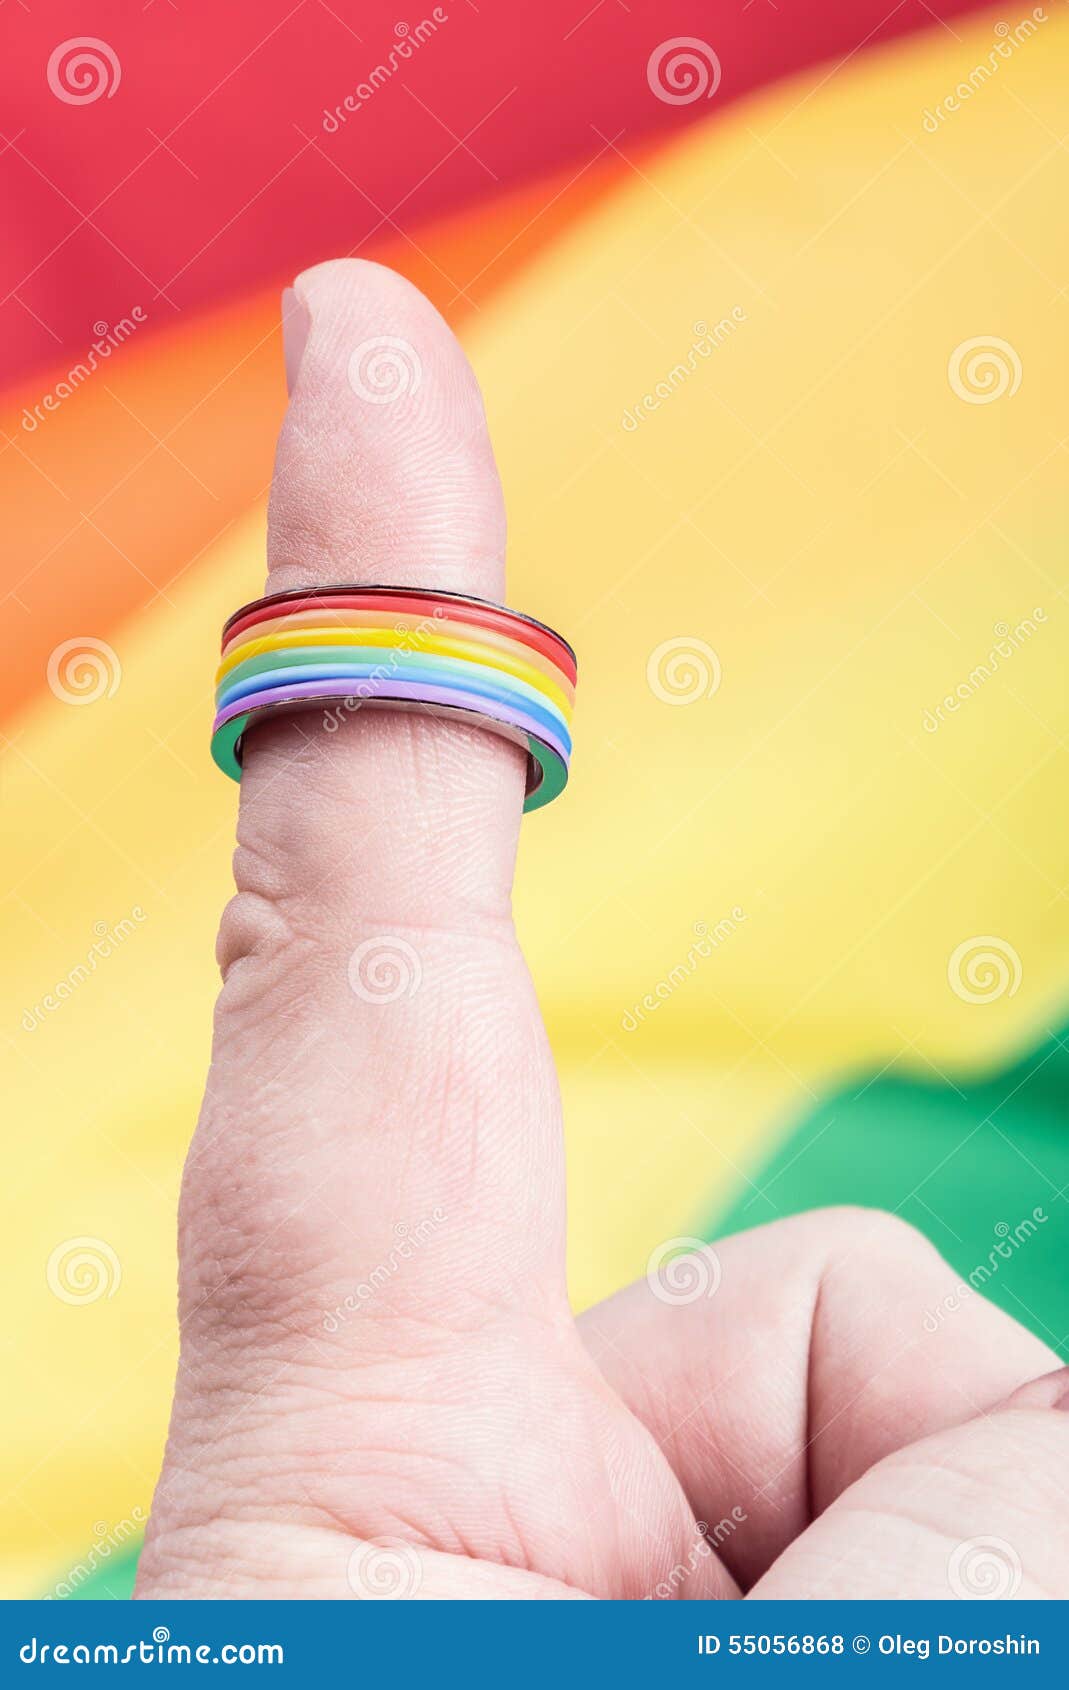 кольцо на большом пальце геи фото 9